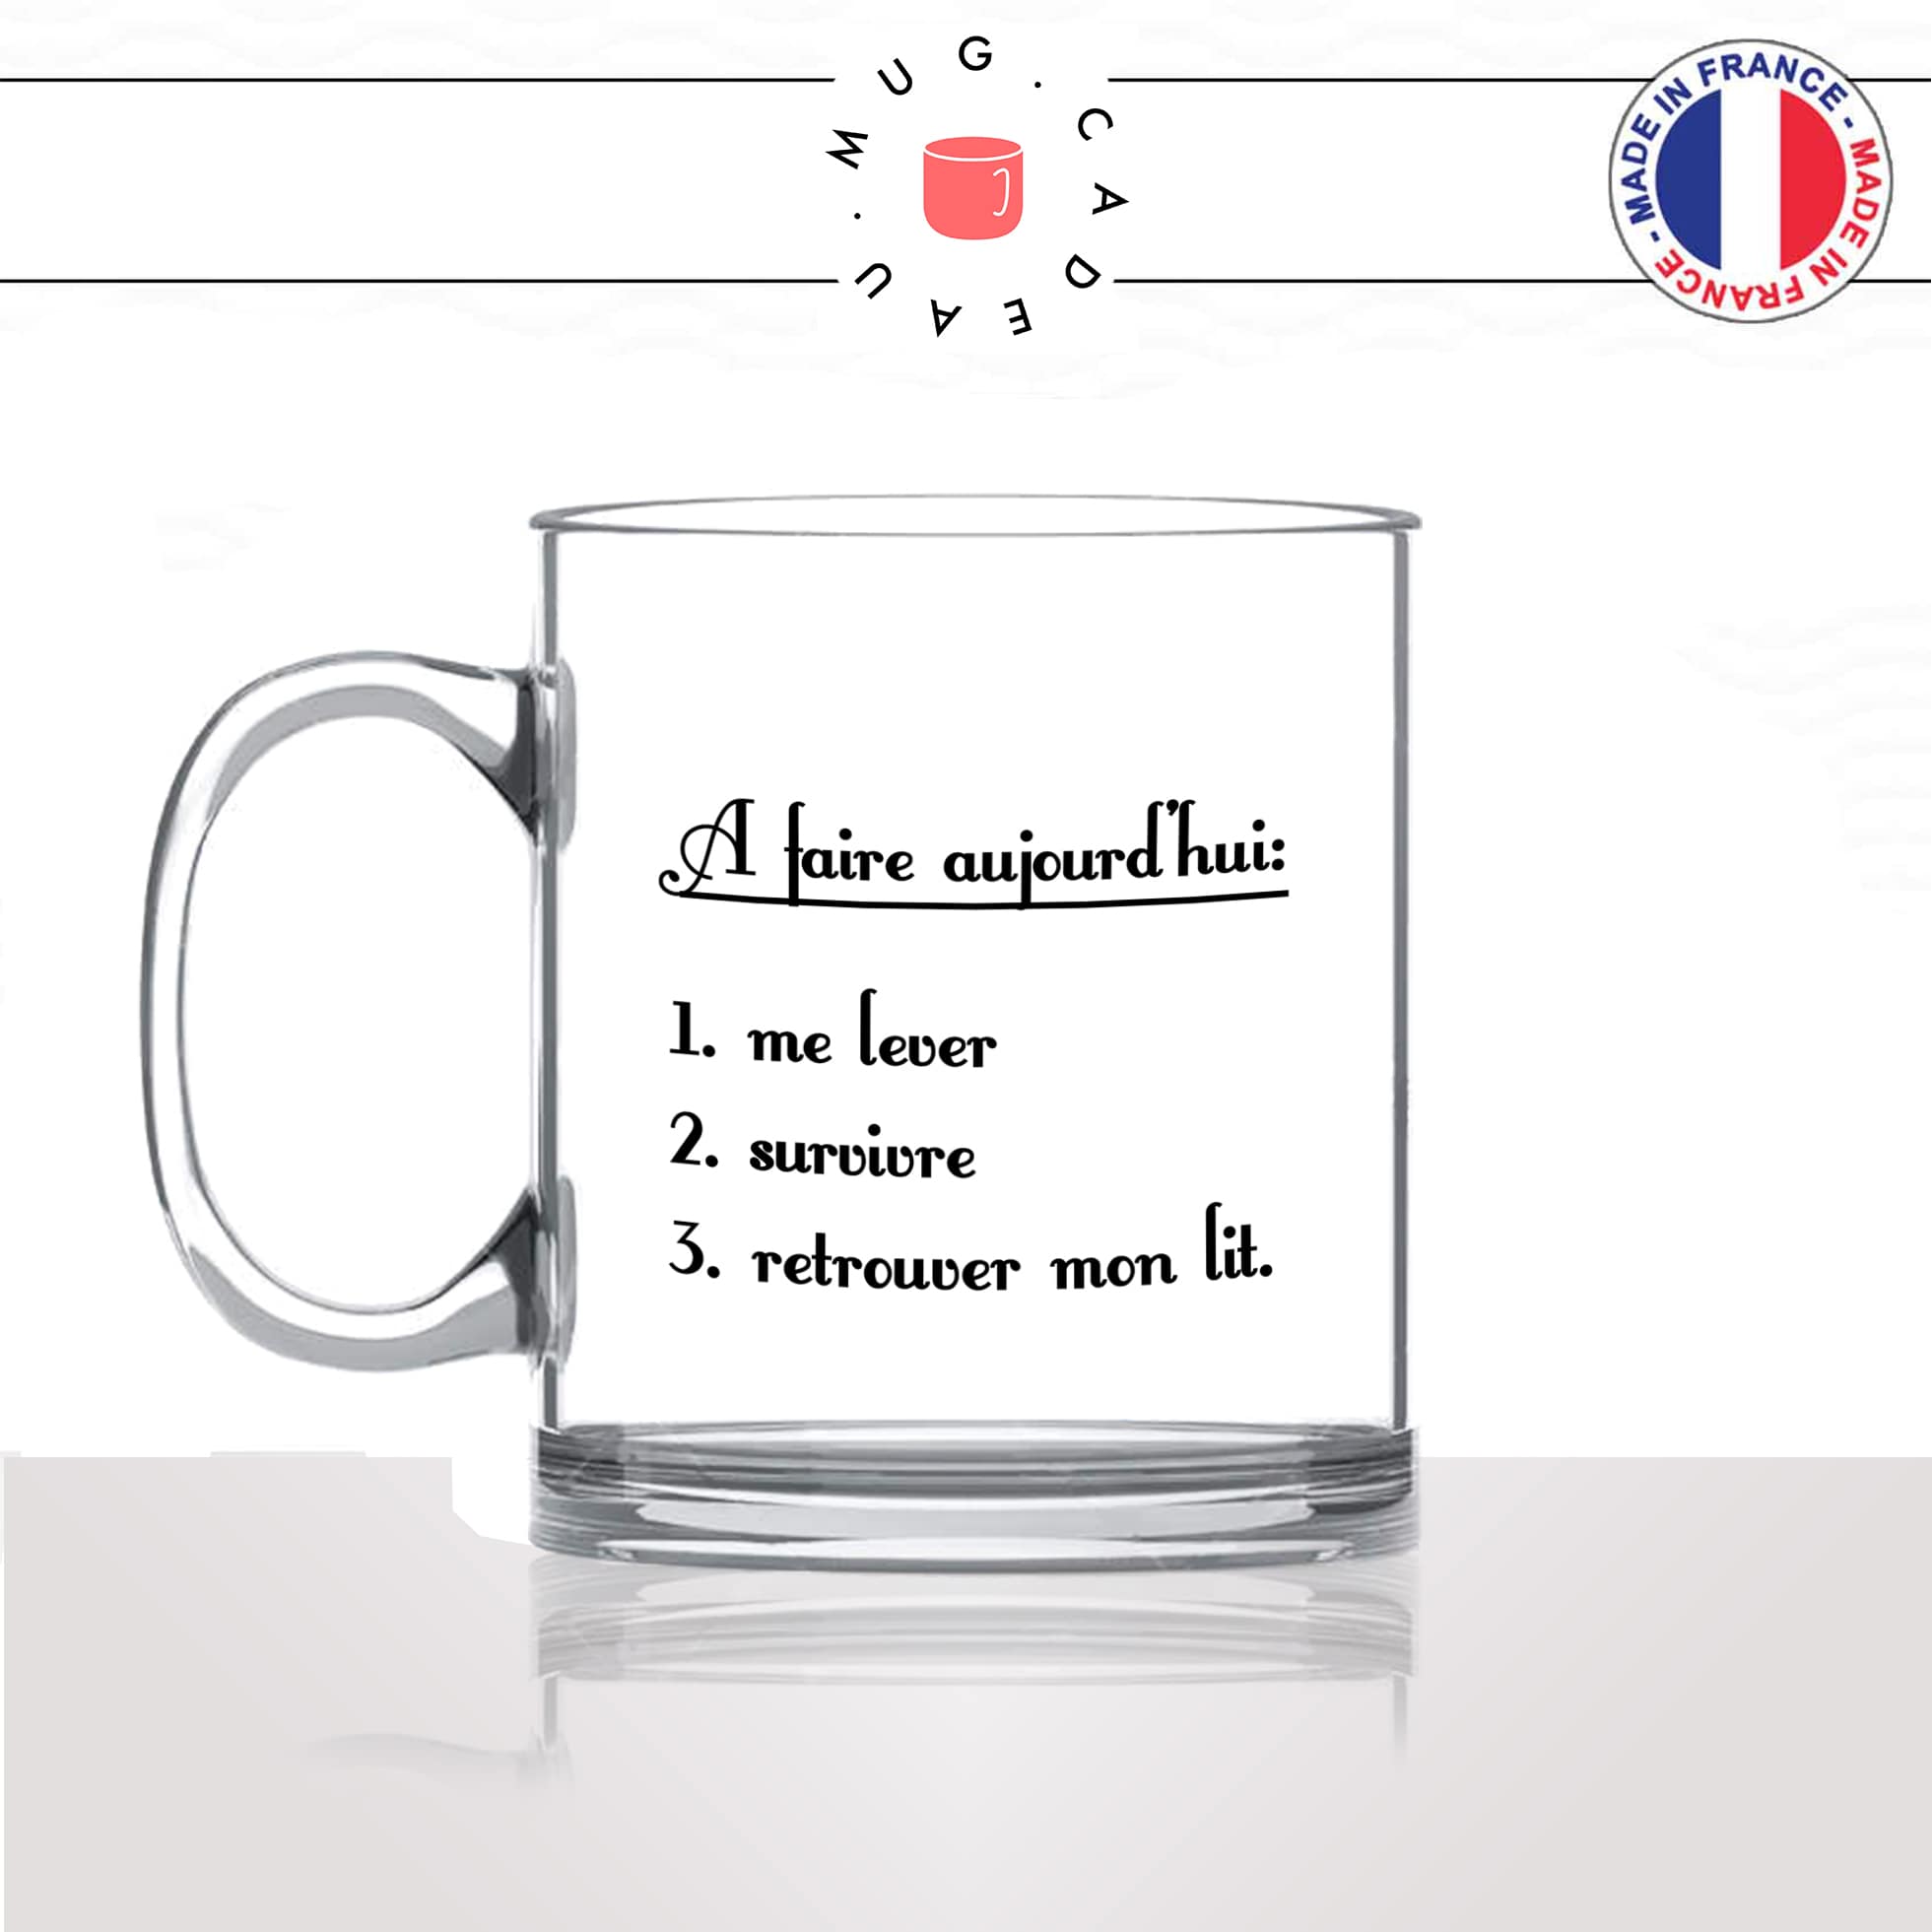 mug-tasse-argent-argenté-silver-a-faire-aujourdhui-me-lever-survivre-covid-flemme-week-end-motivation-humour-idée-cadeau-fun-cool-café-thé-min